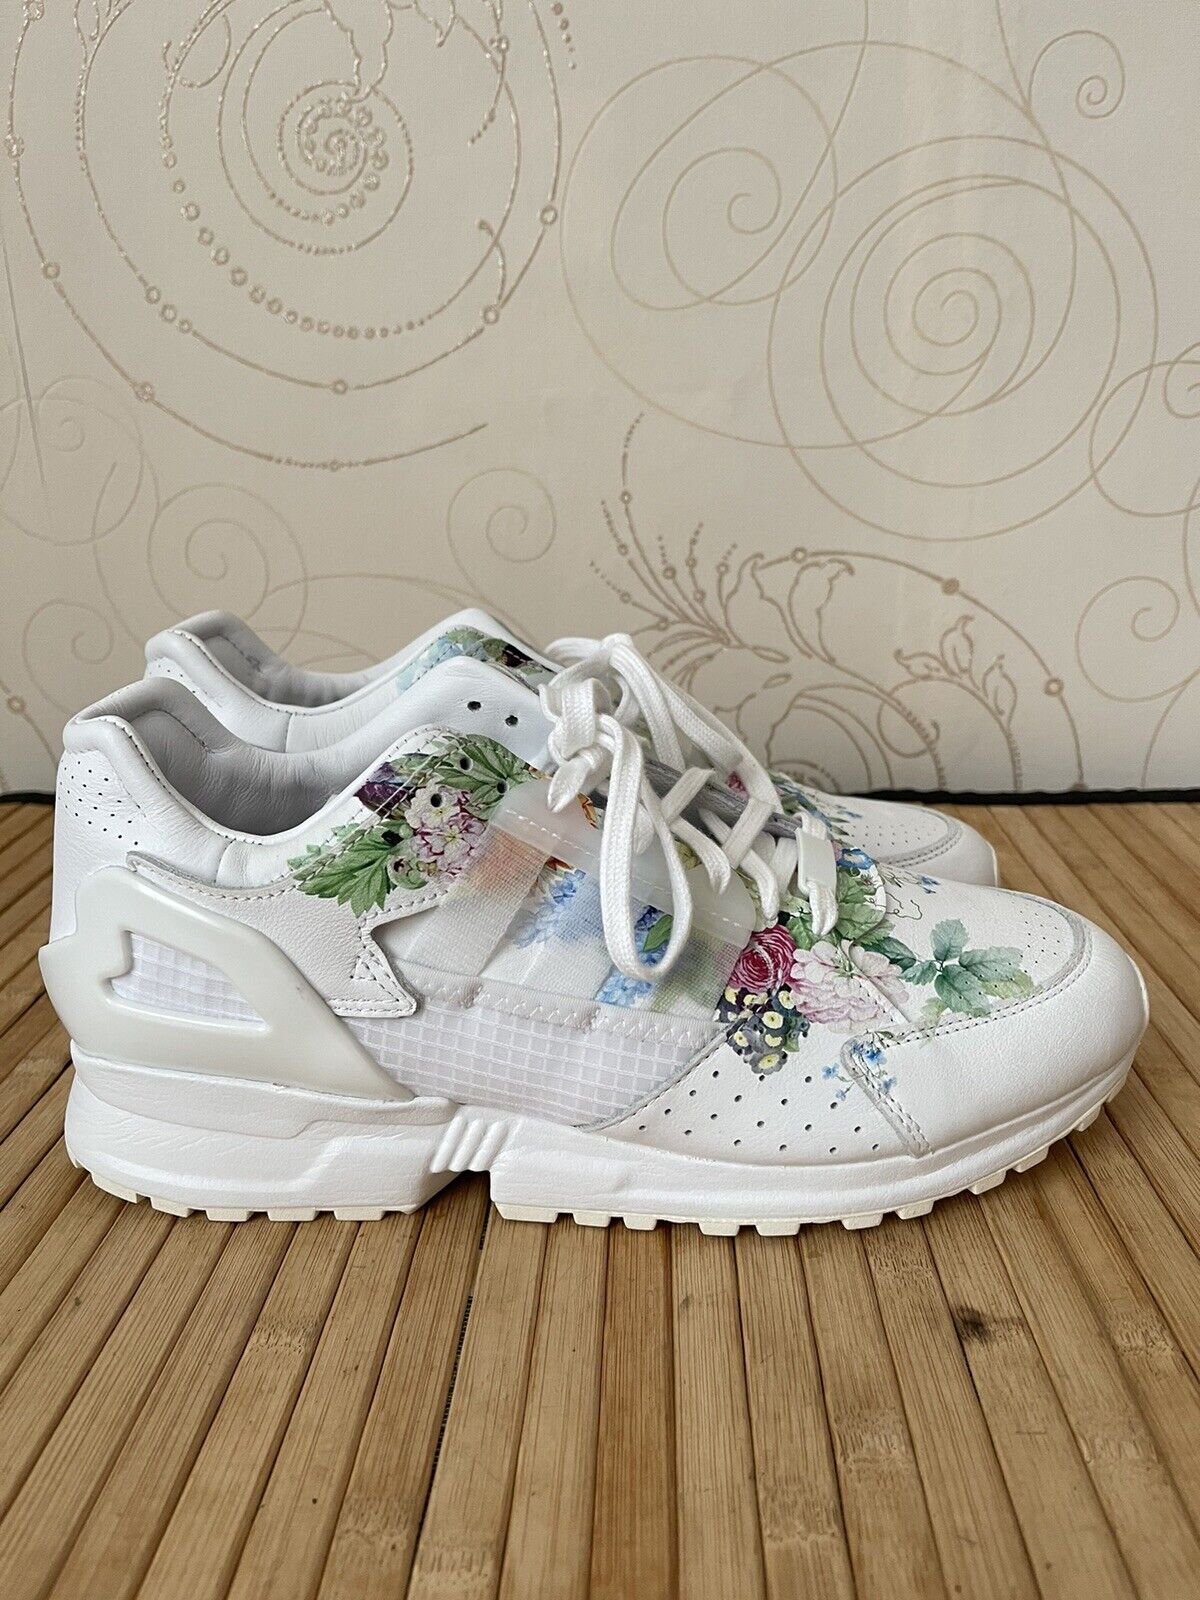 Adidas Meissen ZX 10000 Floral Porcelain Shoes FZ4888 Size US 10 EU 44